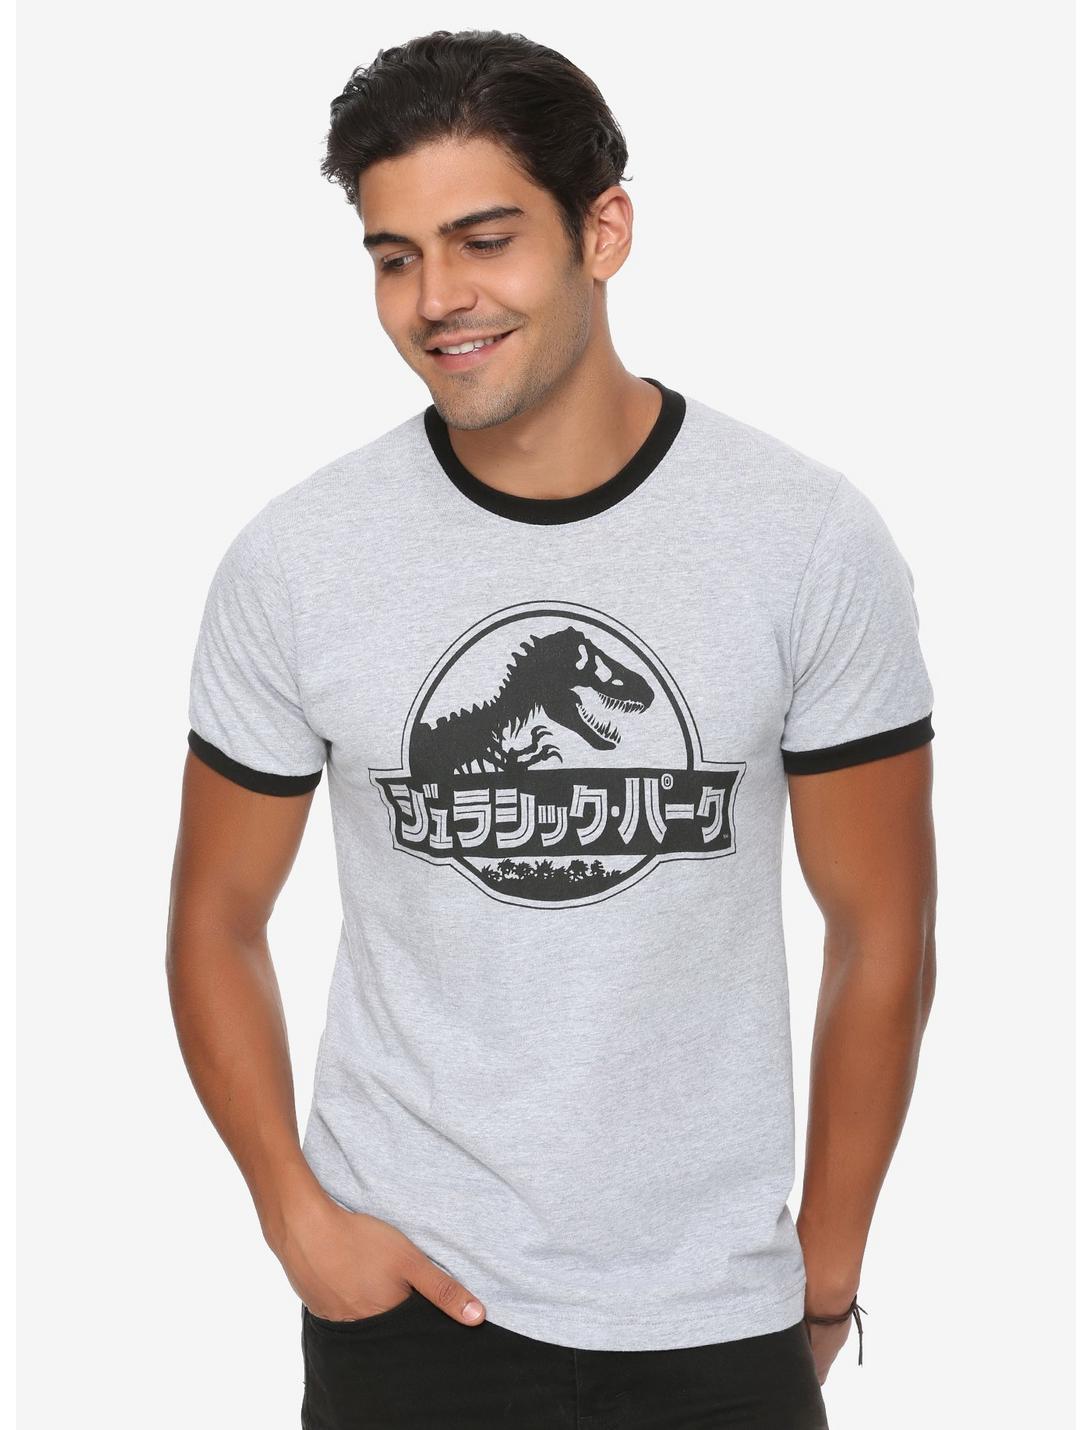 Jurassic Park Katakana Ringer T-Shirt, GREY, hi-res